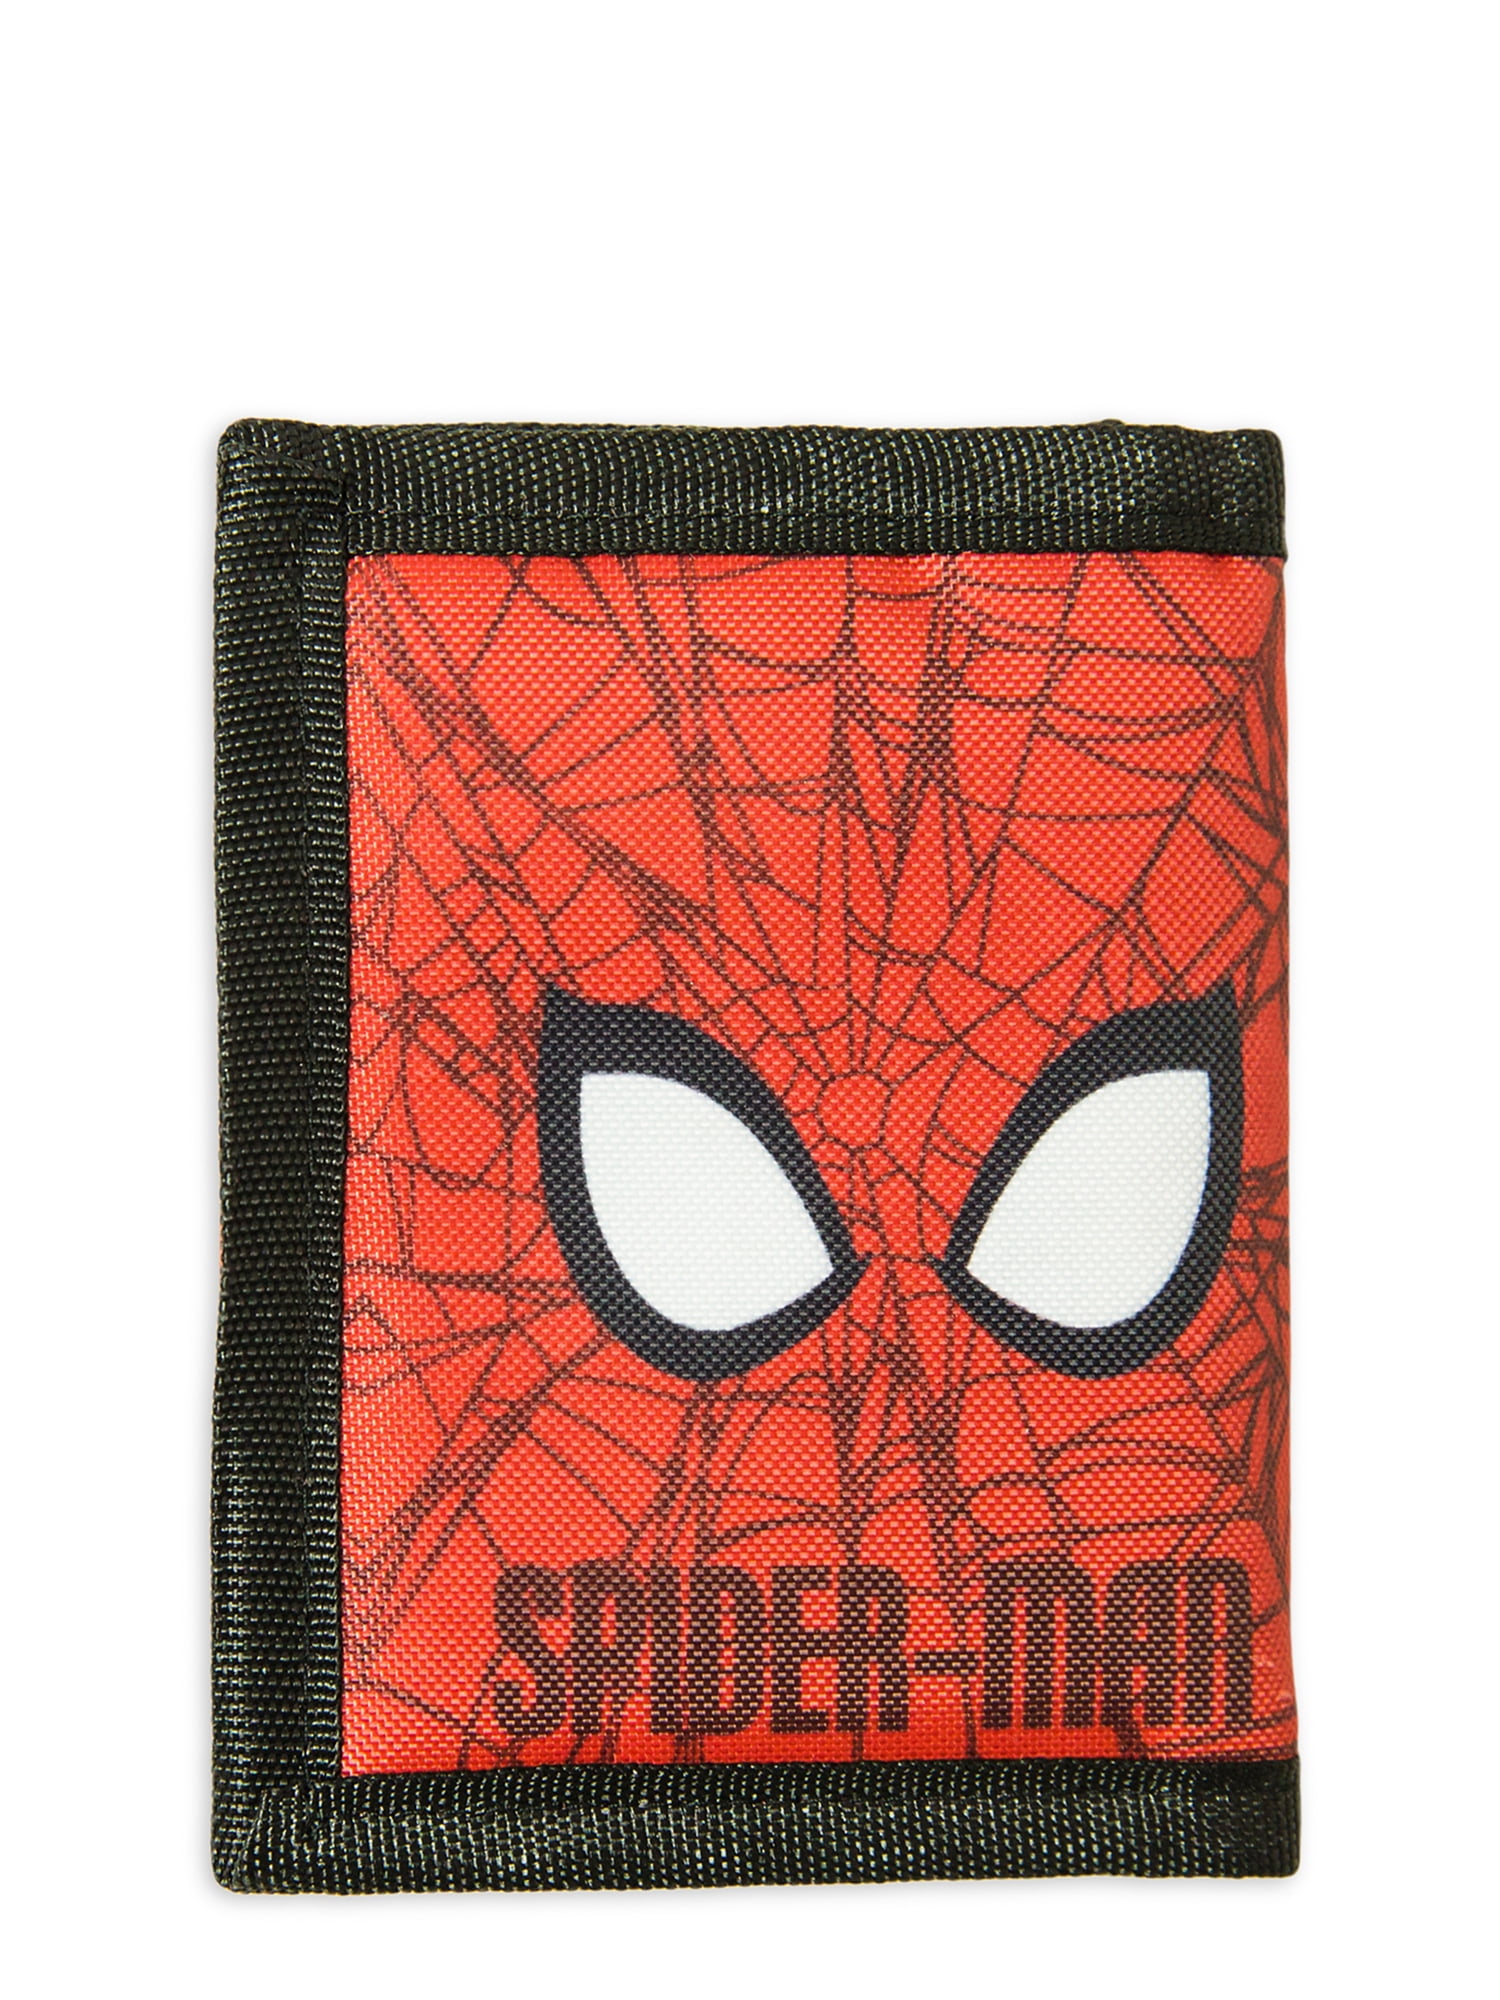 Blue Boy Gift Marvel Spider Man Wallet Canvas Tri-fold Bill Coin Pocket